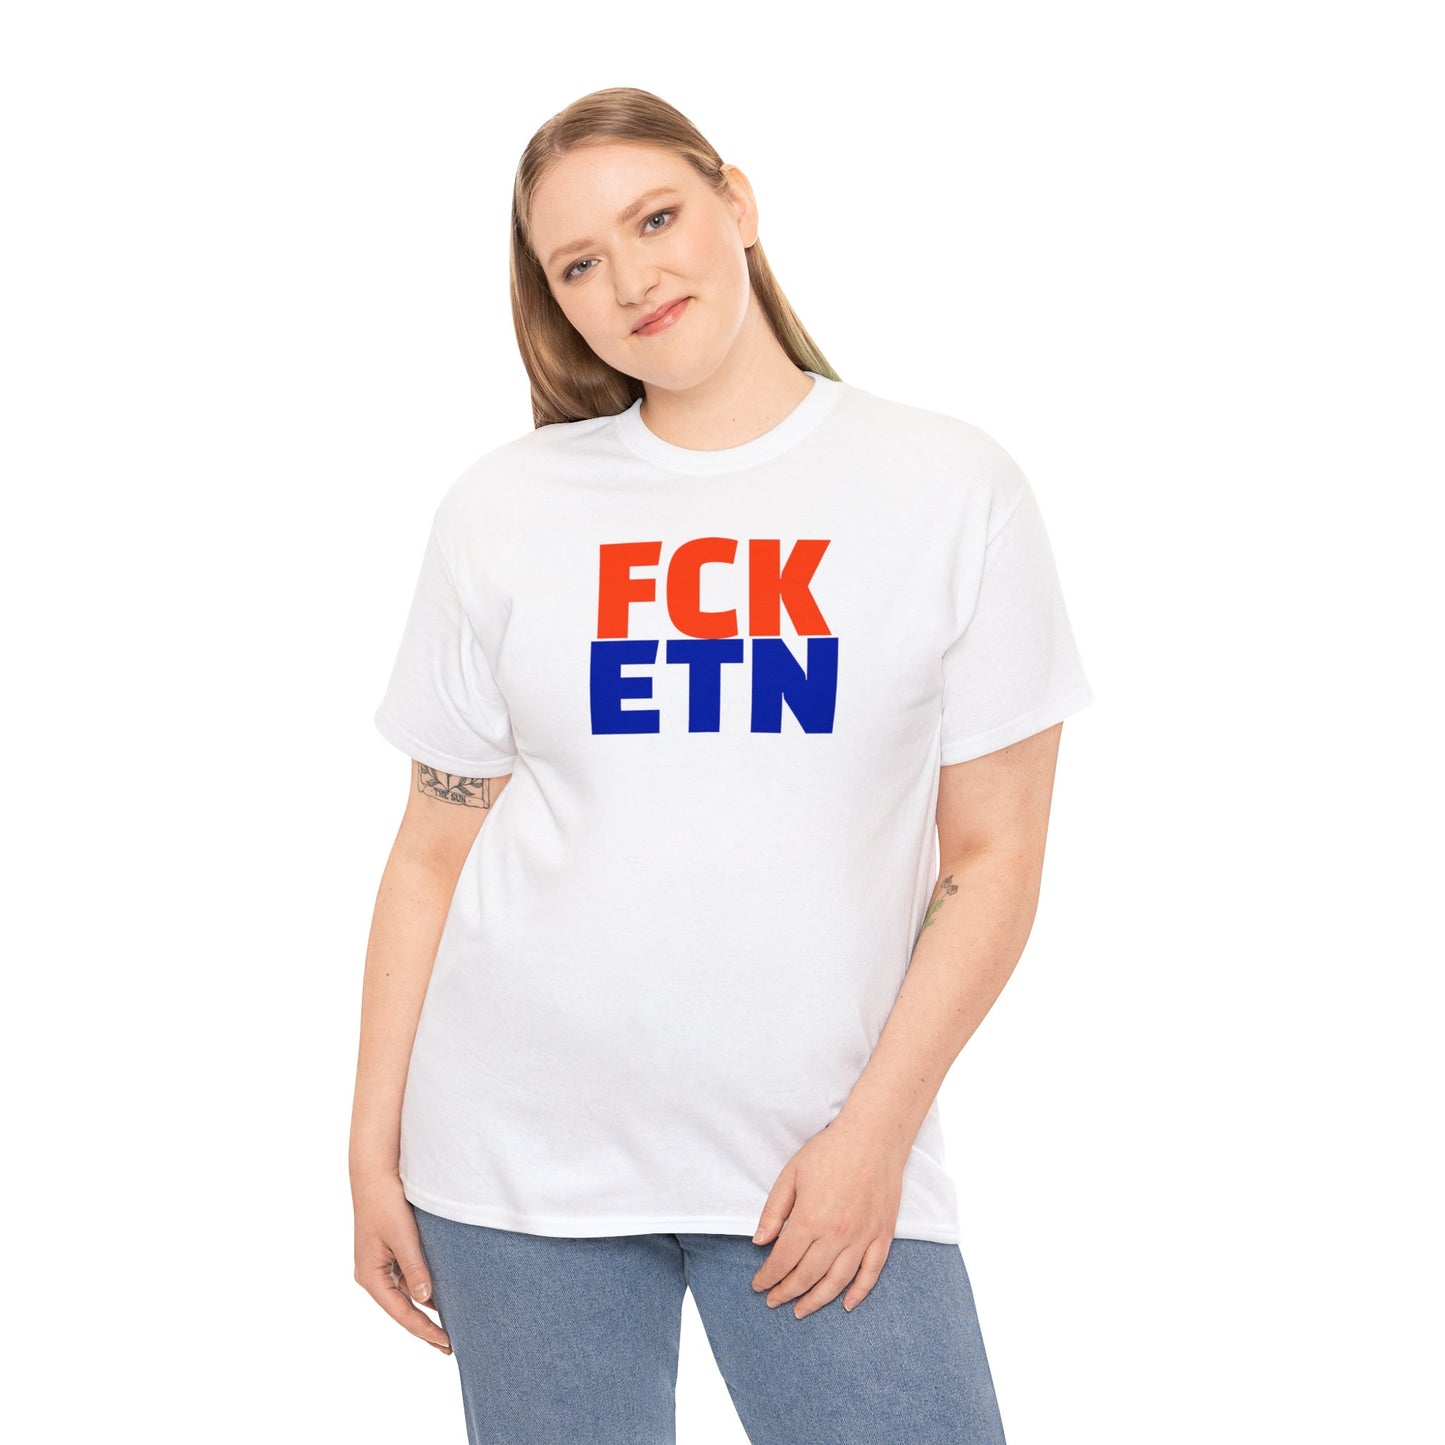 FCK ETN